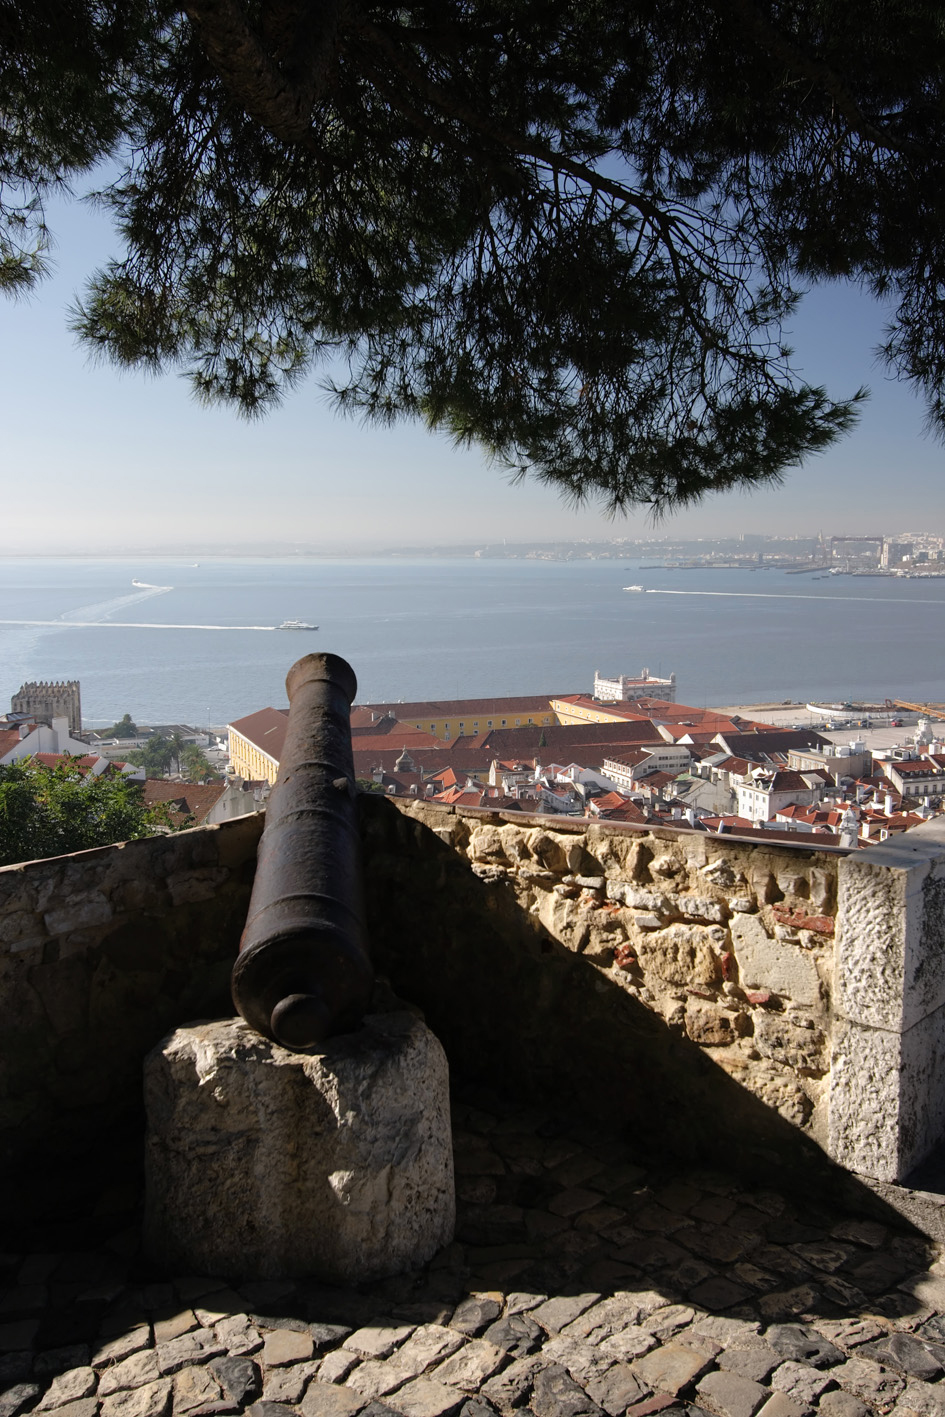 Un’altra Lisbona: come la città è cambiata dopo la pandemia